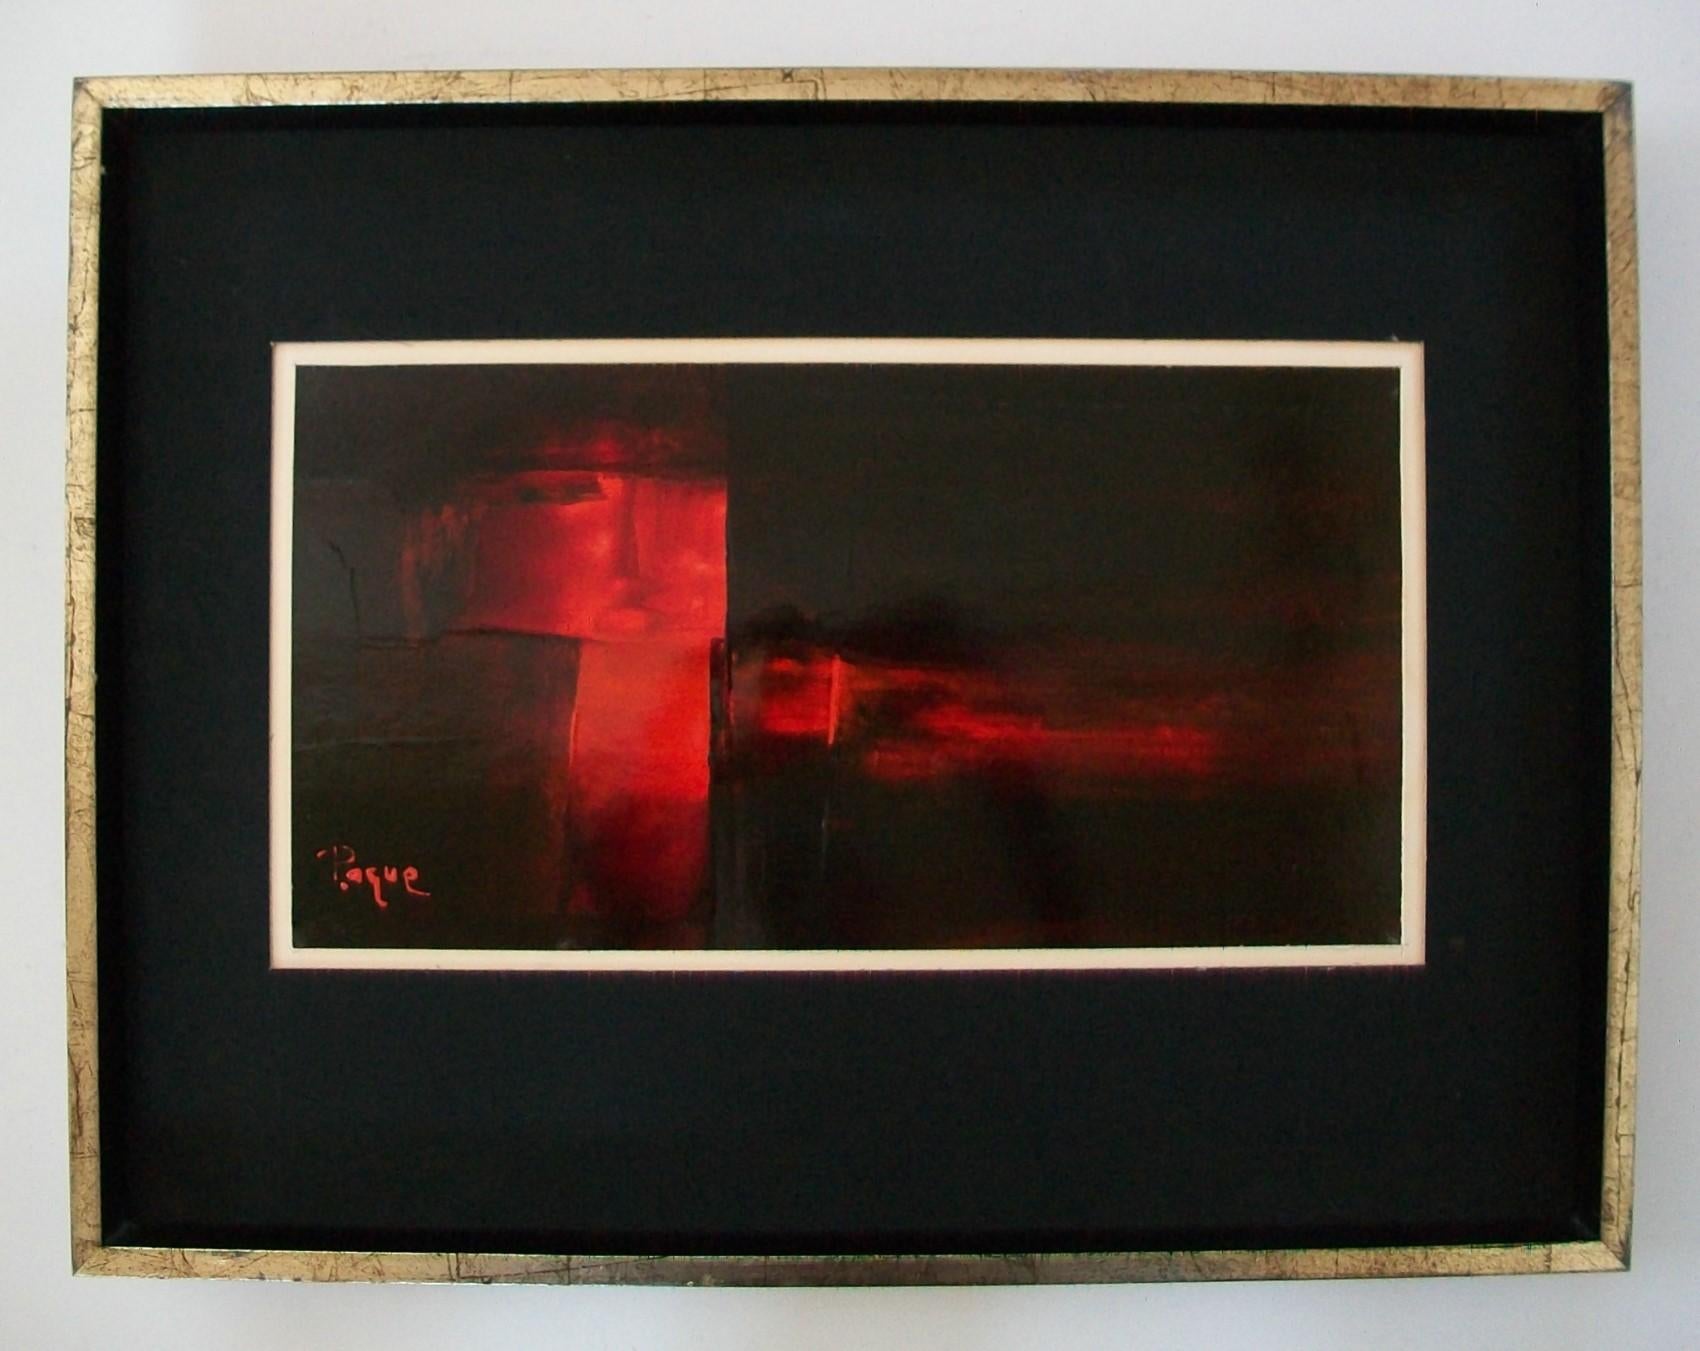 SERGE PAQUET (PAQUE) - Peinture à l'huile abstraite du milieu du siècle sur carton - présentant des traits audacieux de rouge sur un fond noir - tableaux noirs et blancs mat sous verre - cadre en feuille d'argent et laque noire avec bord biseauté -